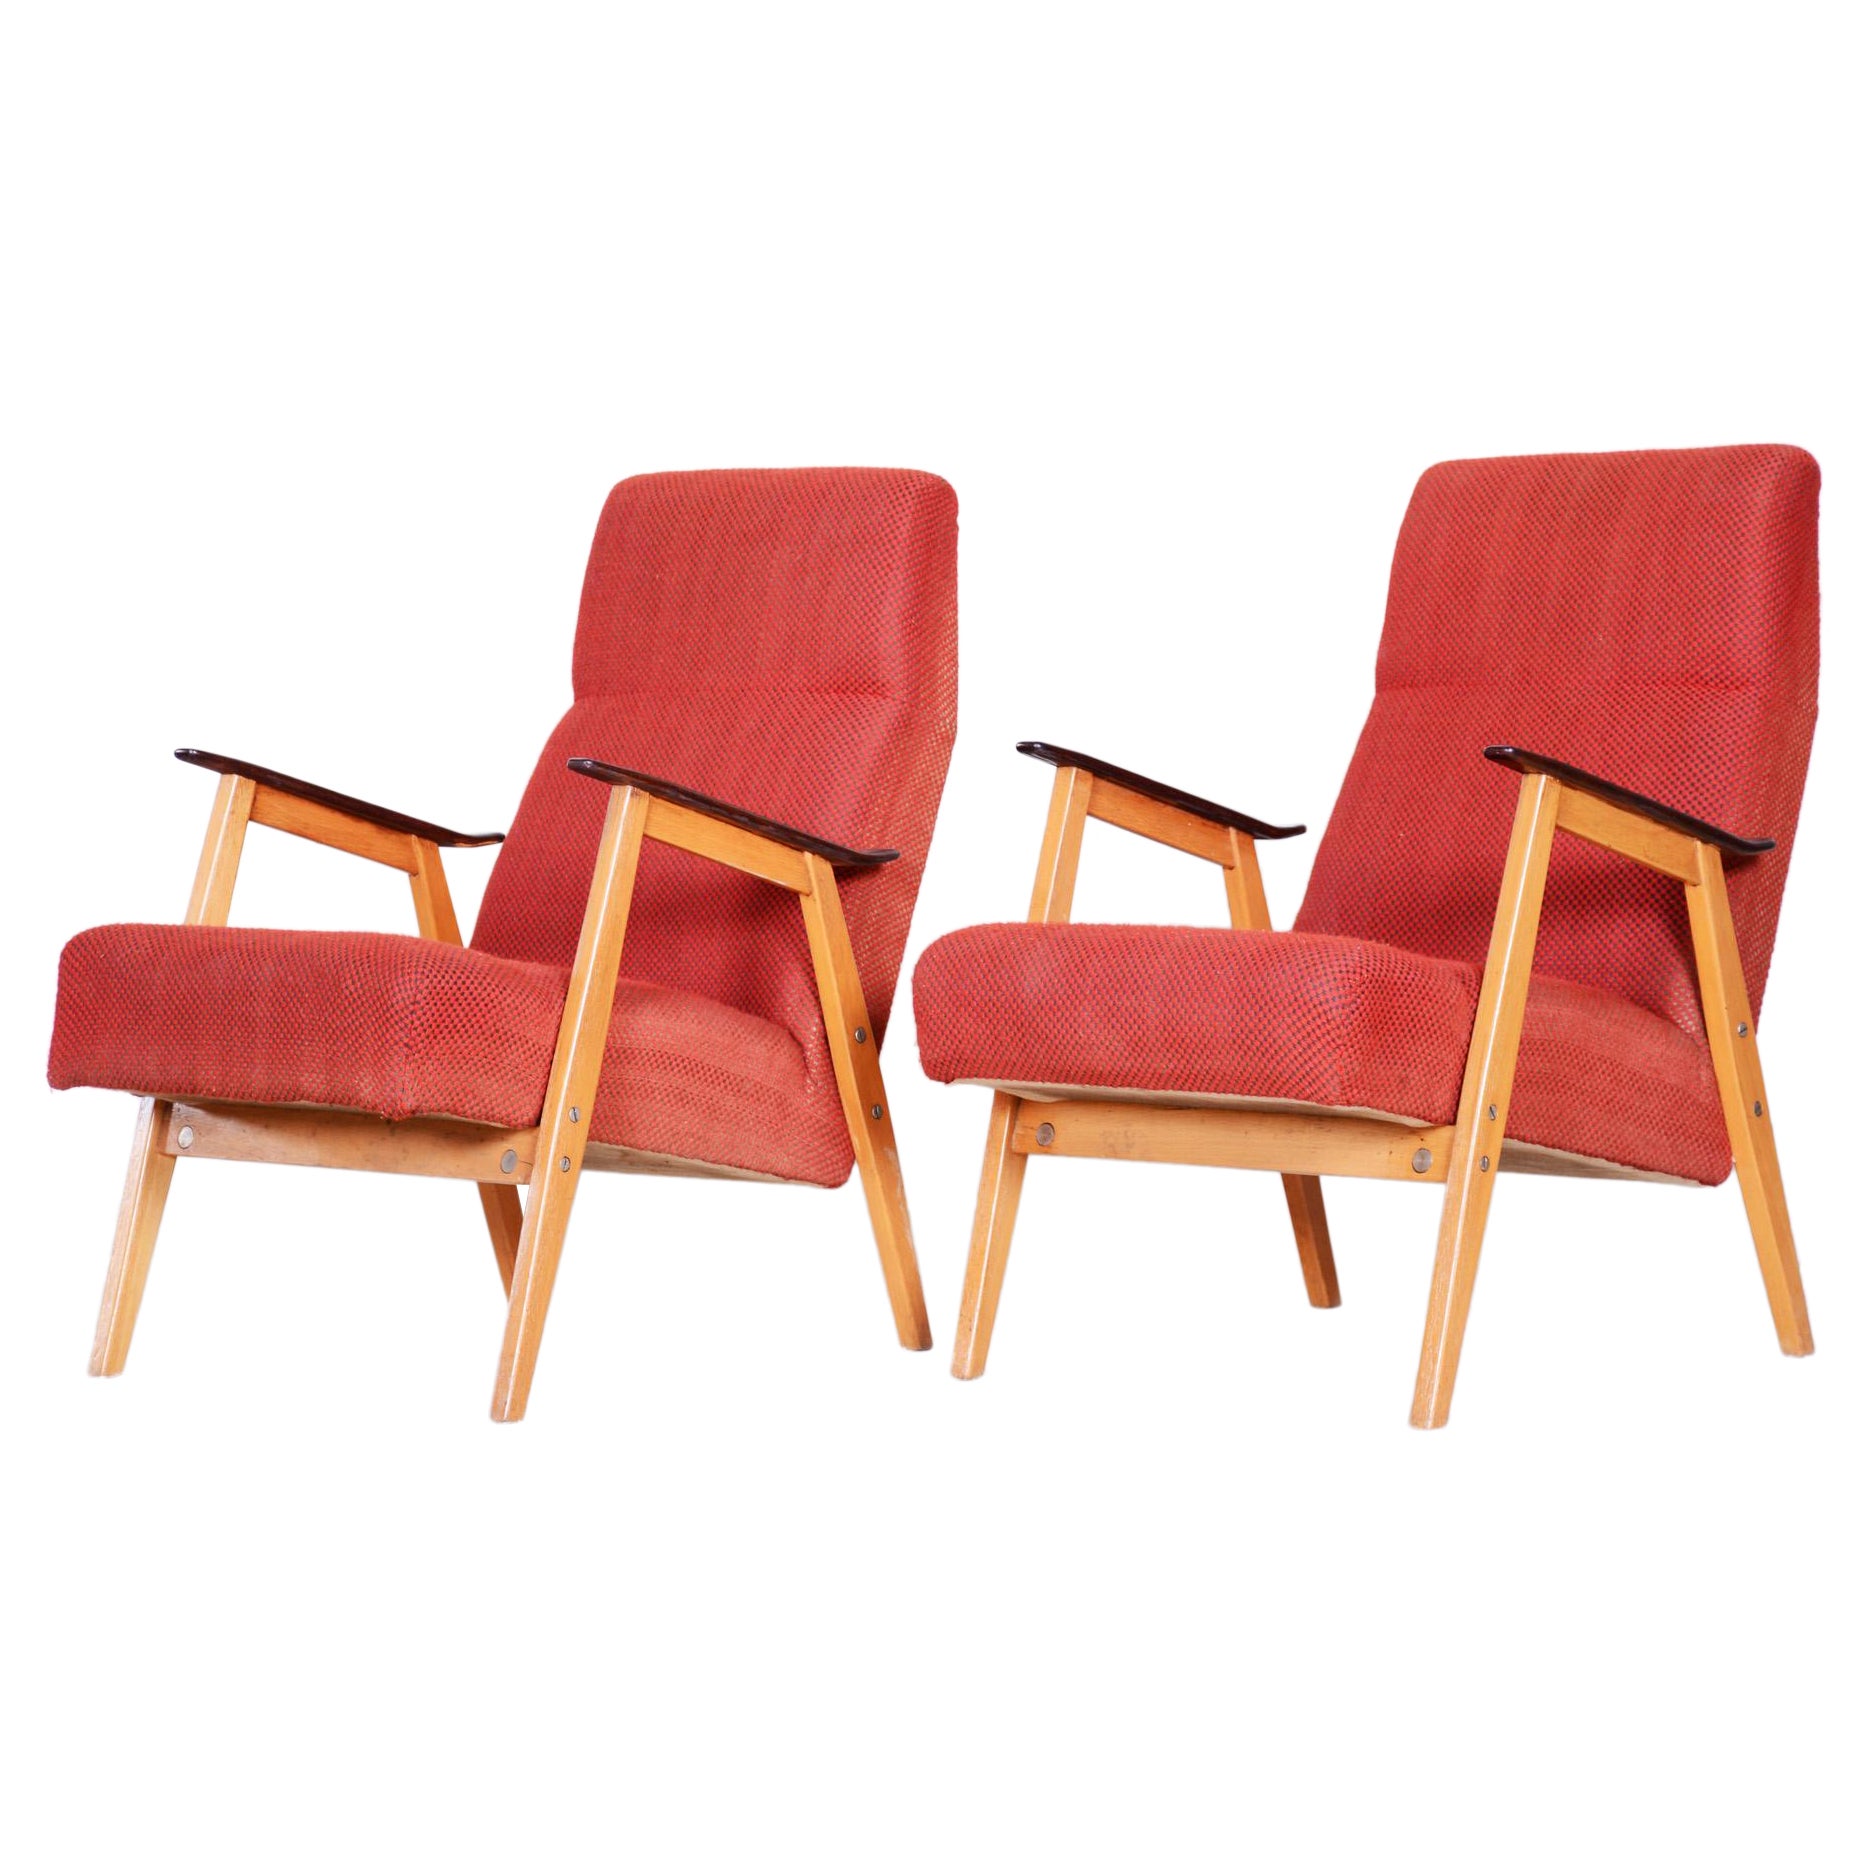 Paire de fauteuils rouges du milieu du siècle restaurés, fabriqués par Jaroslav mdek, République tchèque, 1950